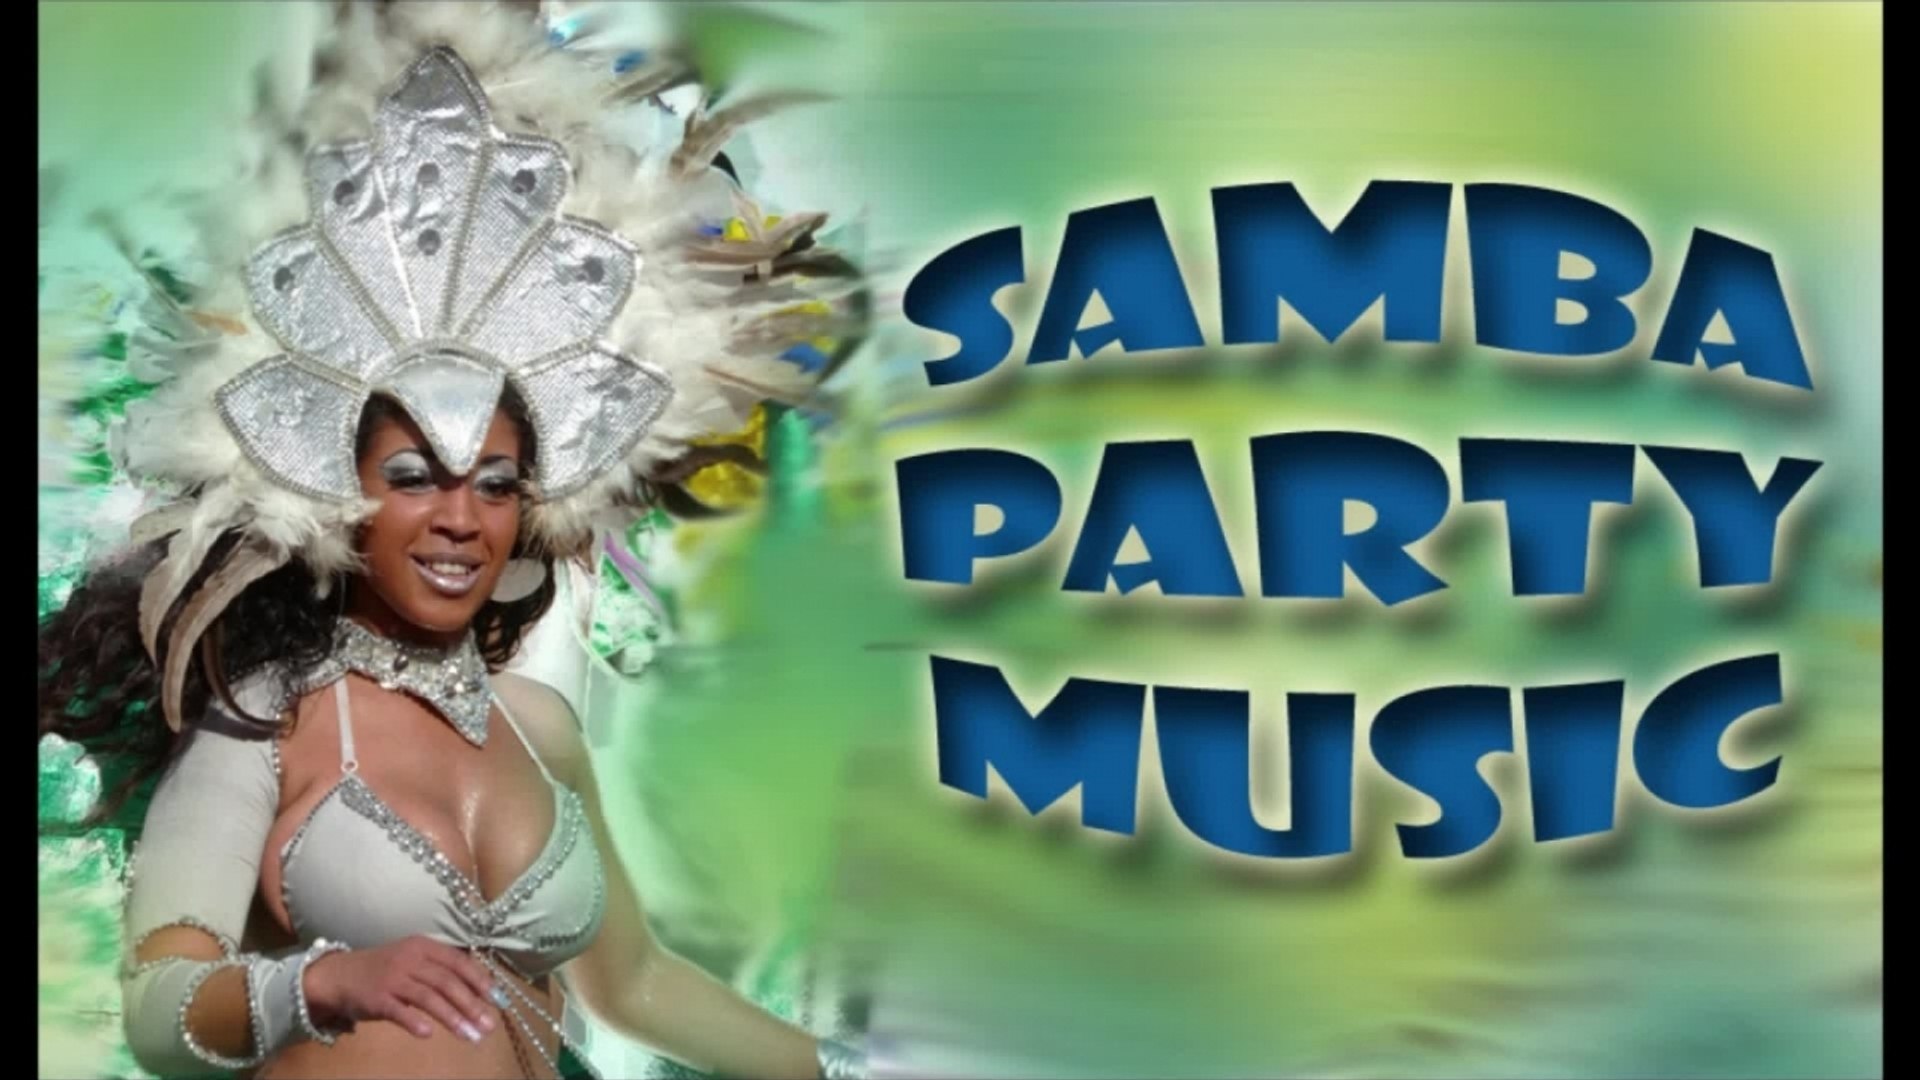 Brazilian Music - Samba Party Music